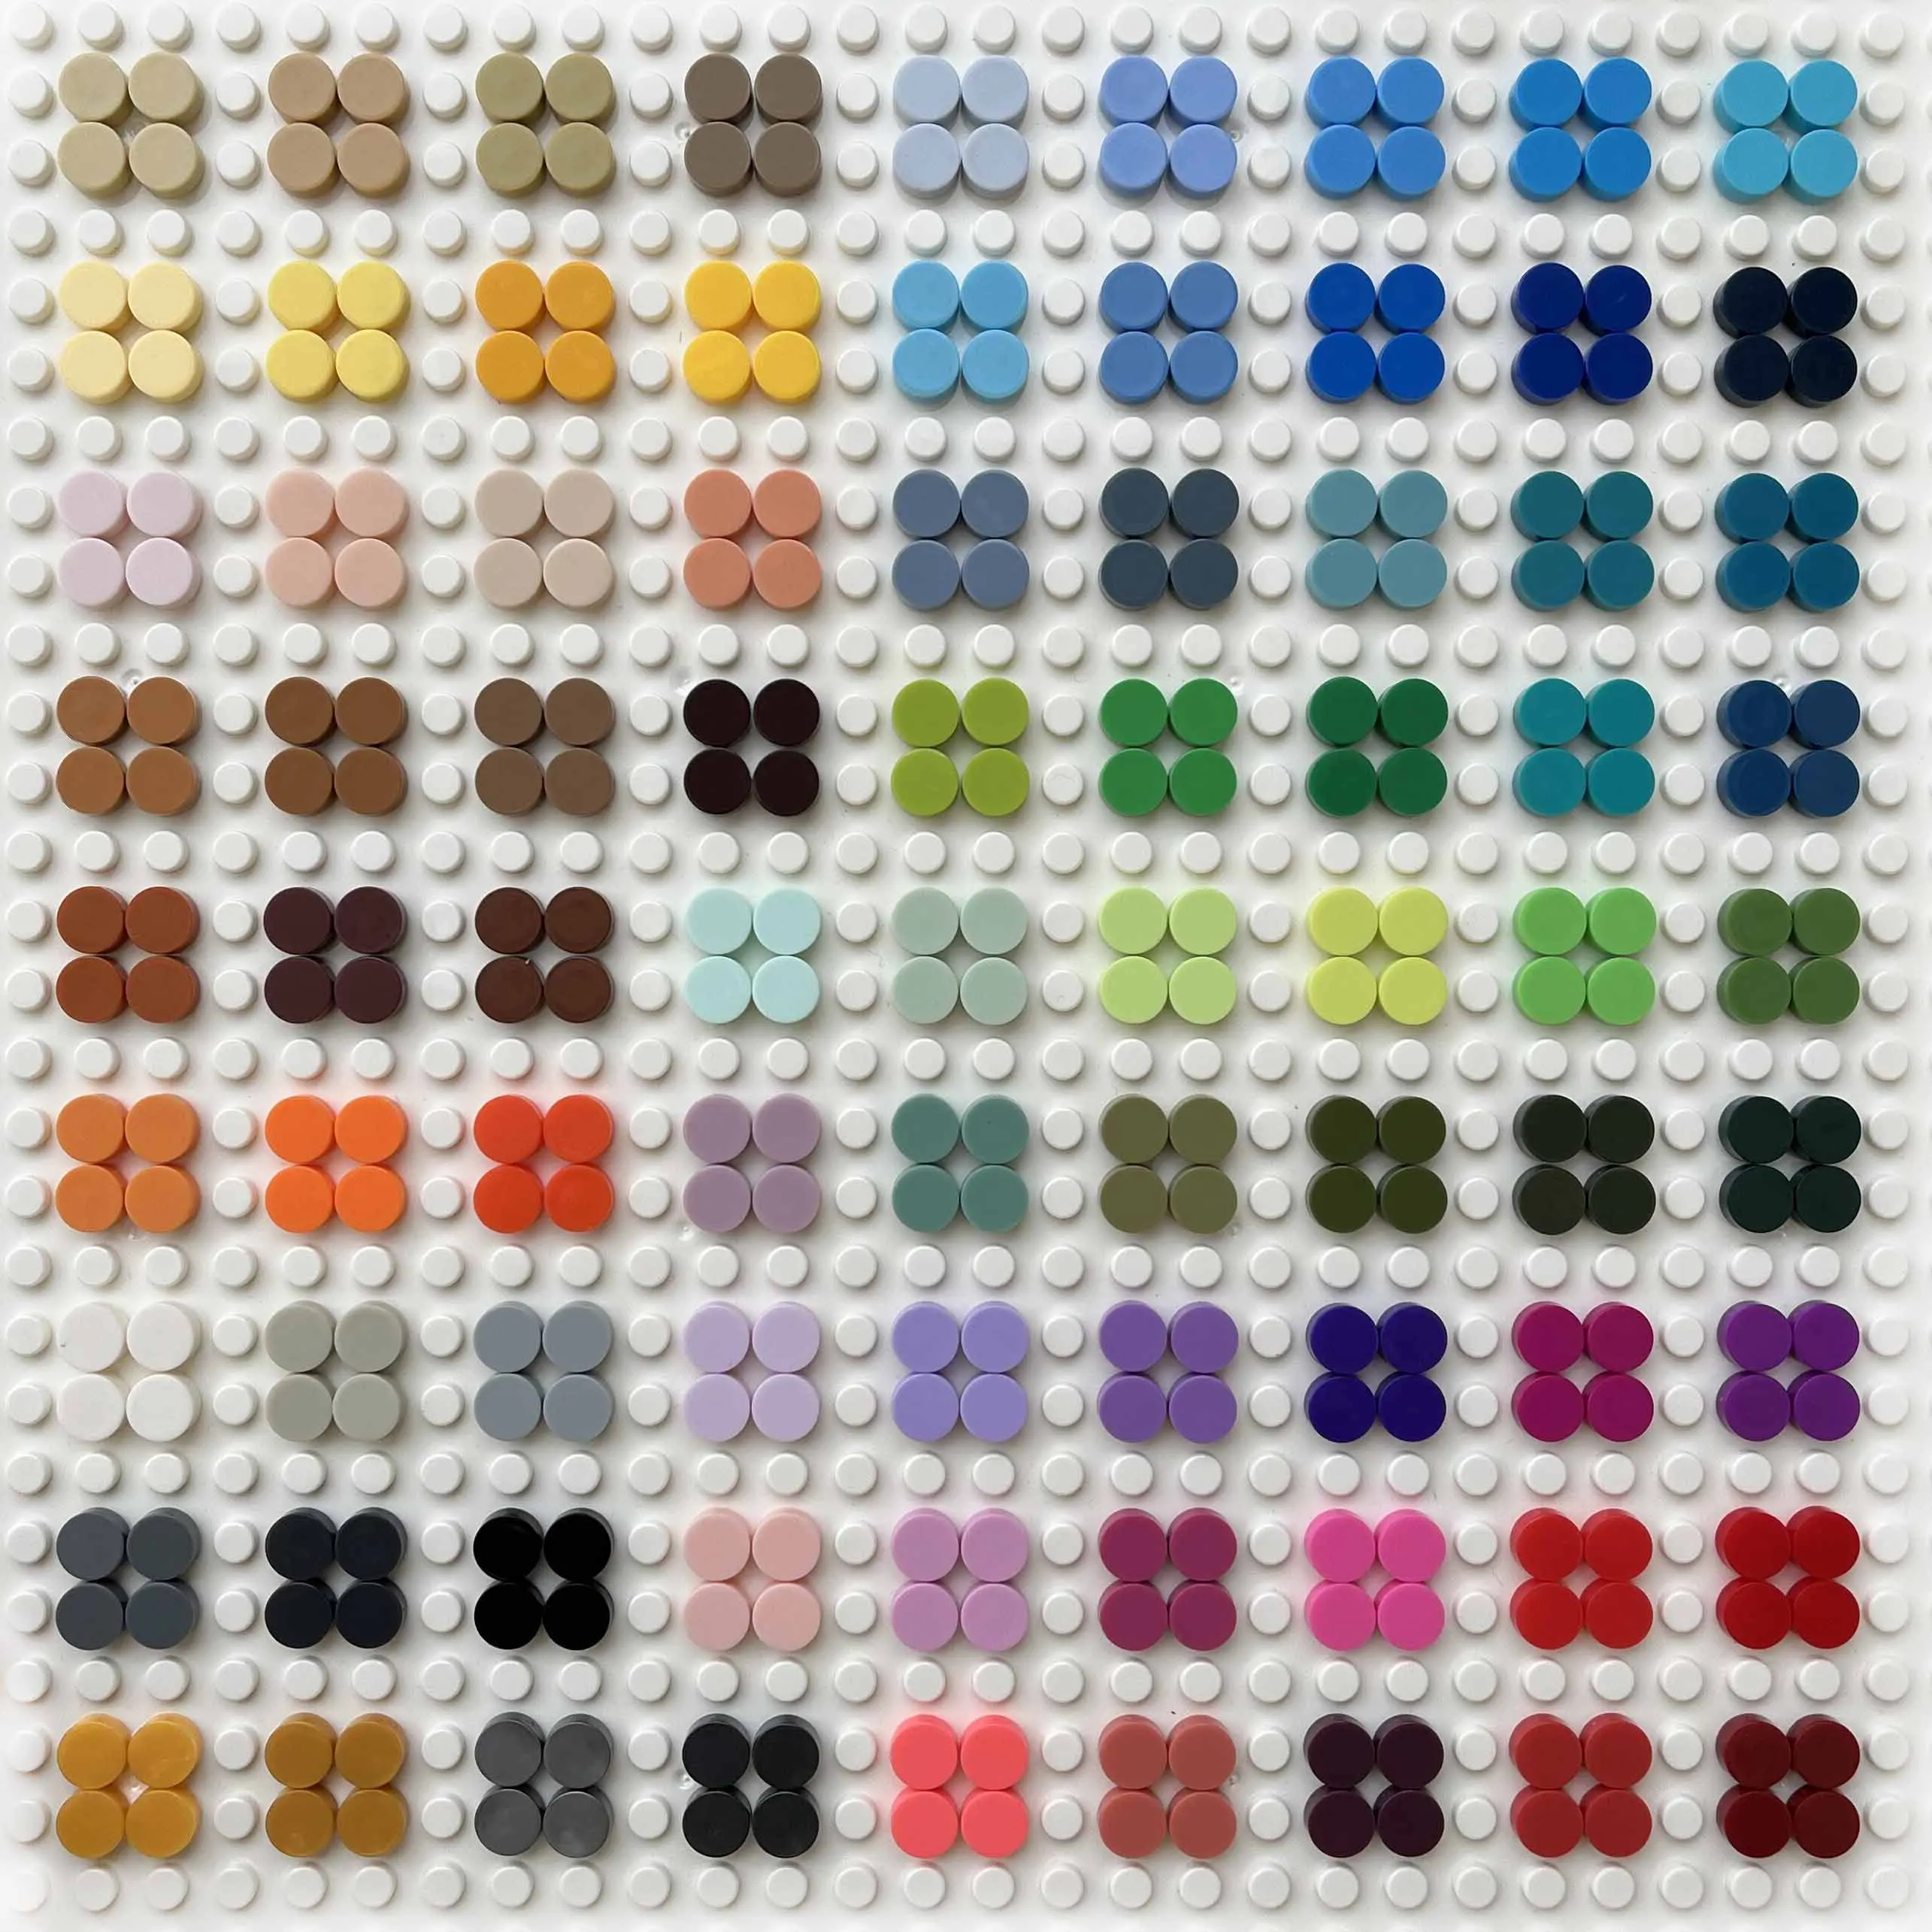 Bulk Buy Tile 1x1 Round 98138 DIY Pixel Art Stuff Remix 91 Colors Building Block Part Brick Mosaic Toys For Artist 4500pcs/Lot